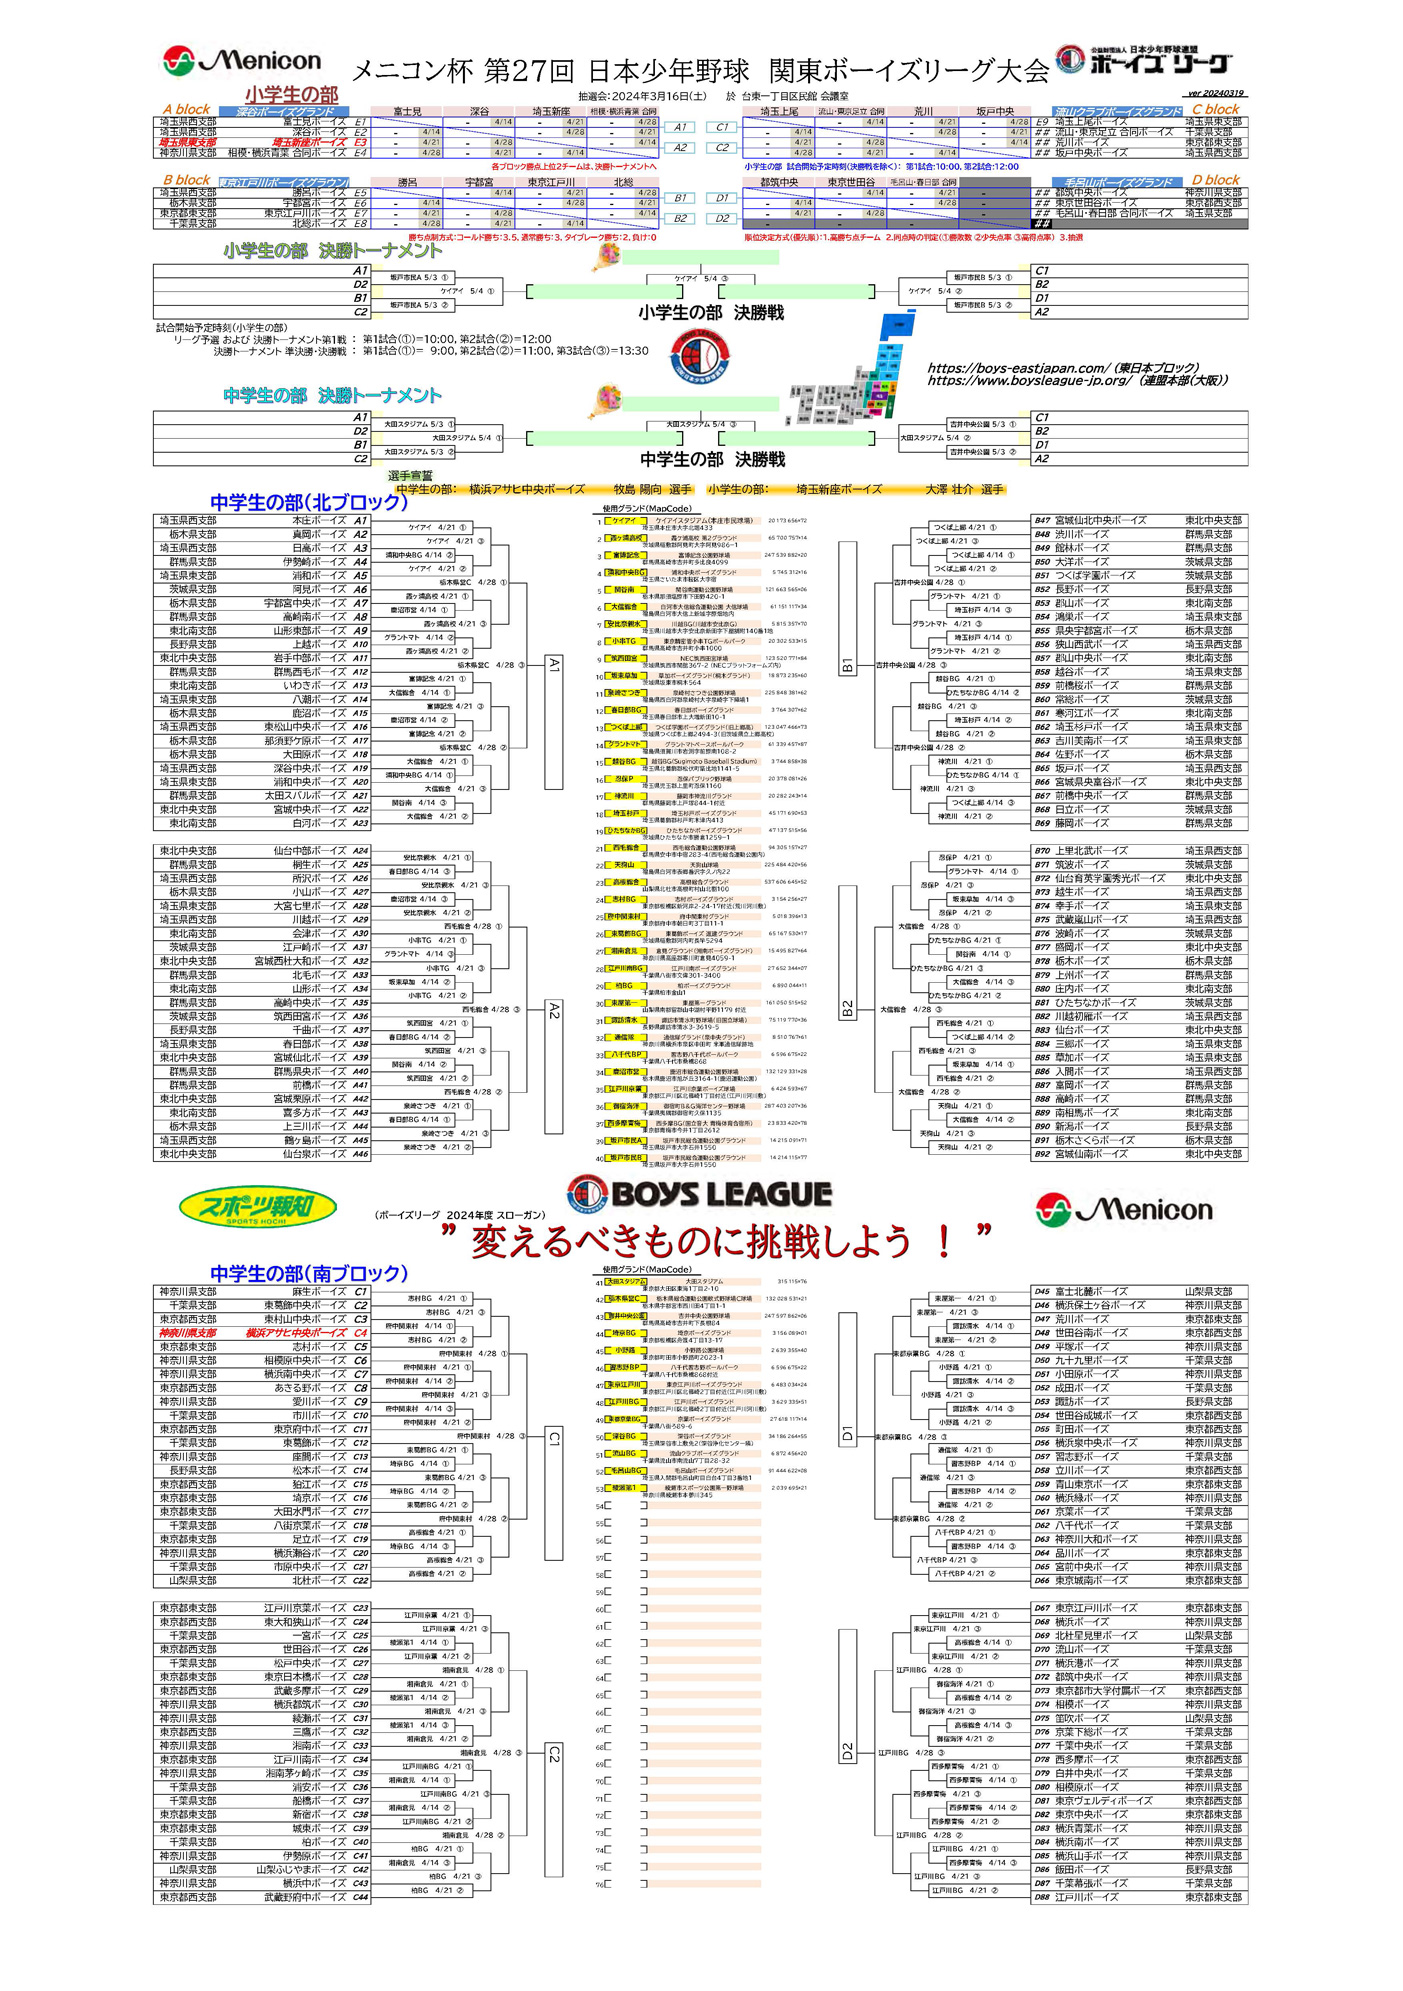 メニコン杯 第27回 日本少年野球 関東ボーイズリーグ大会 組合せ